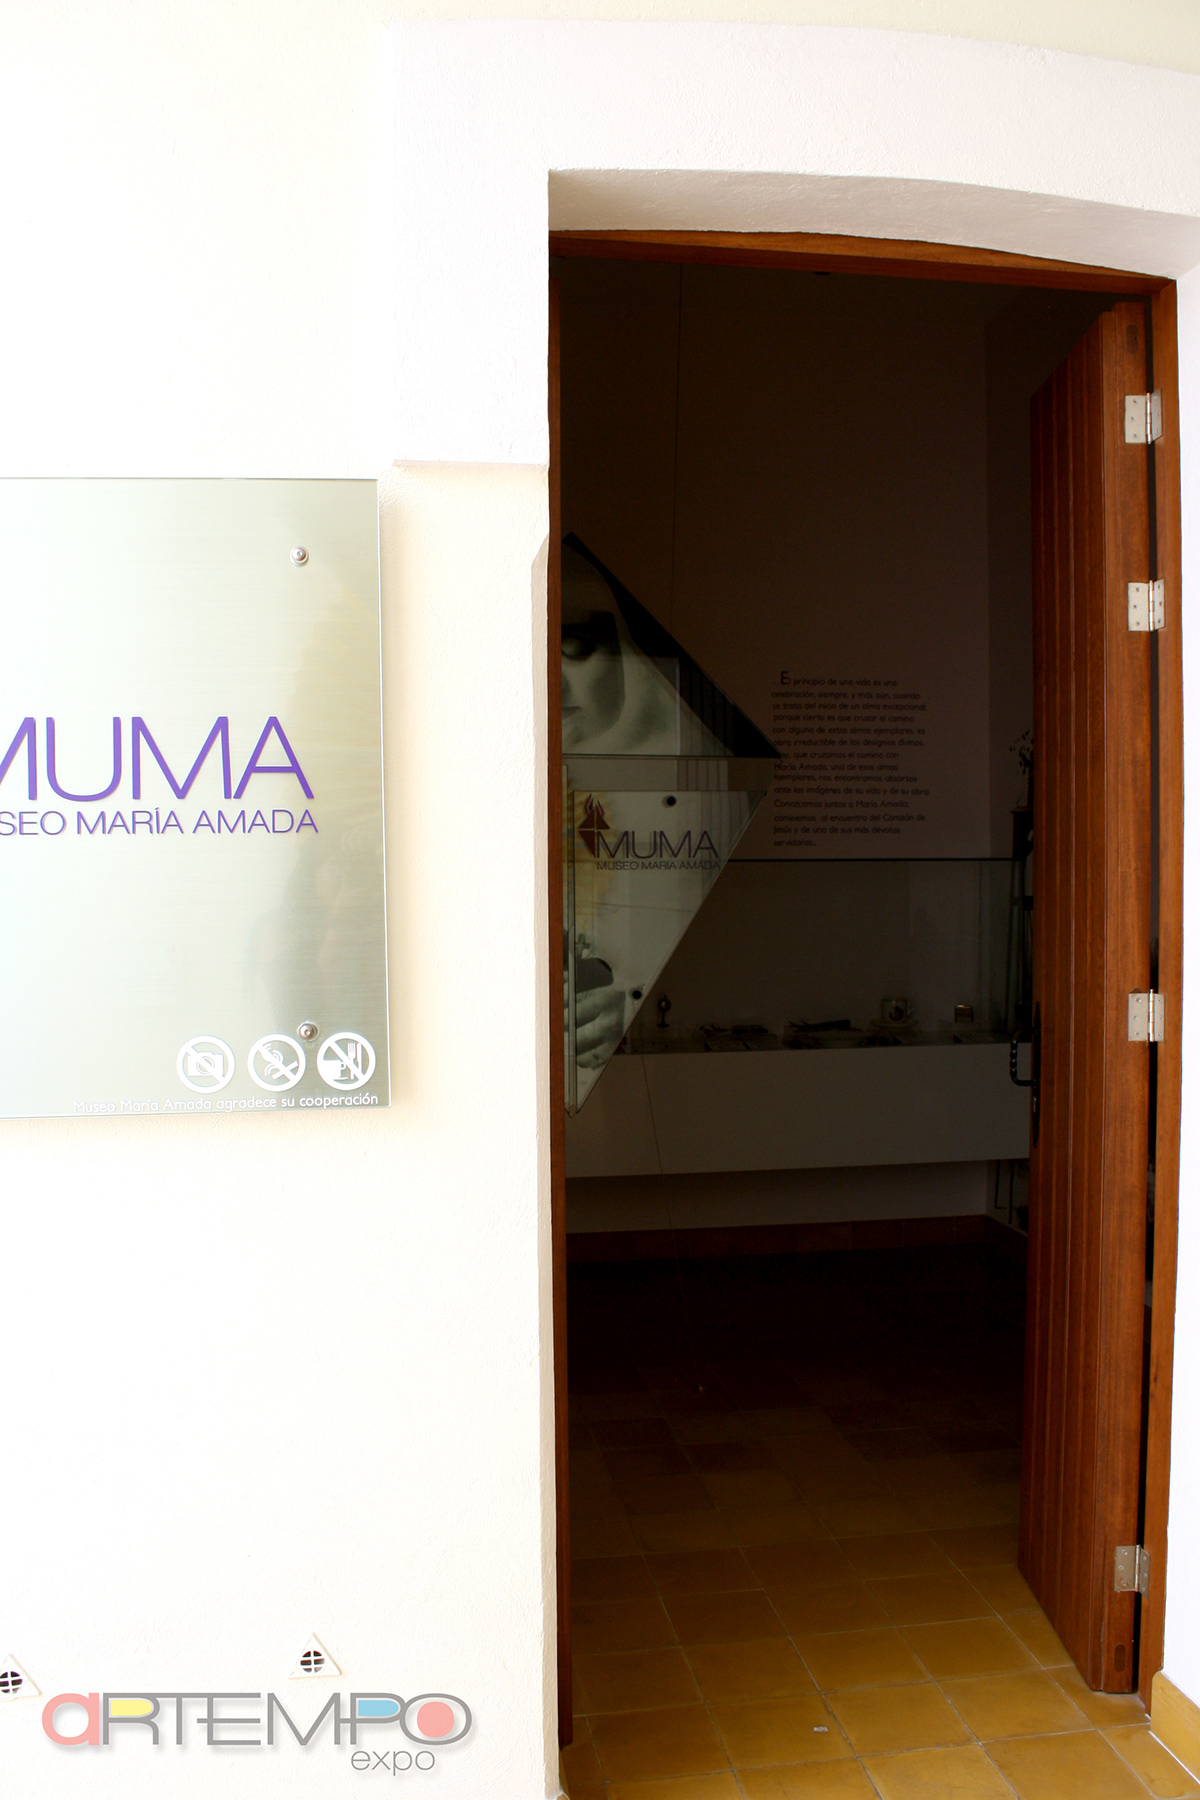 museum museography muma Artempo